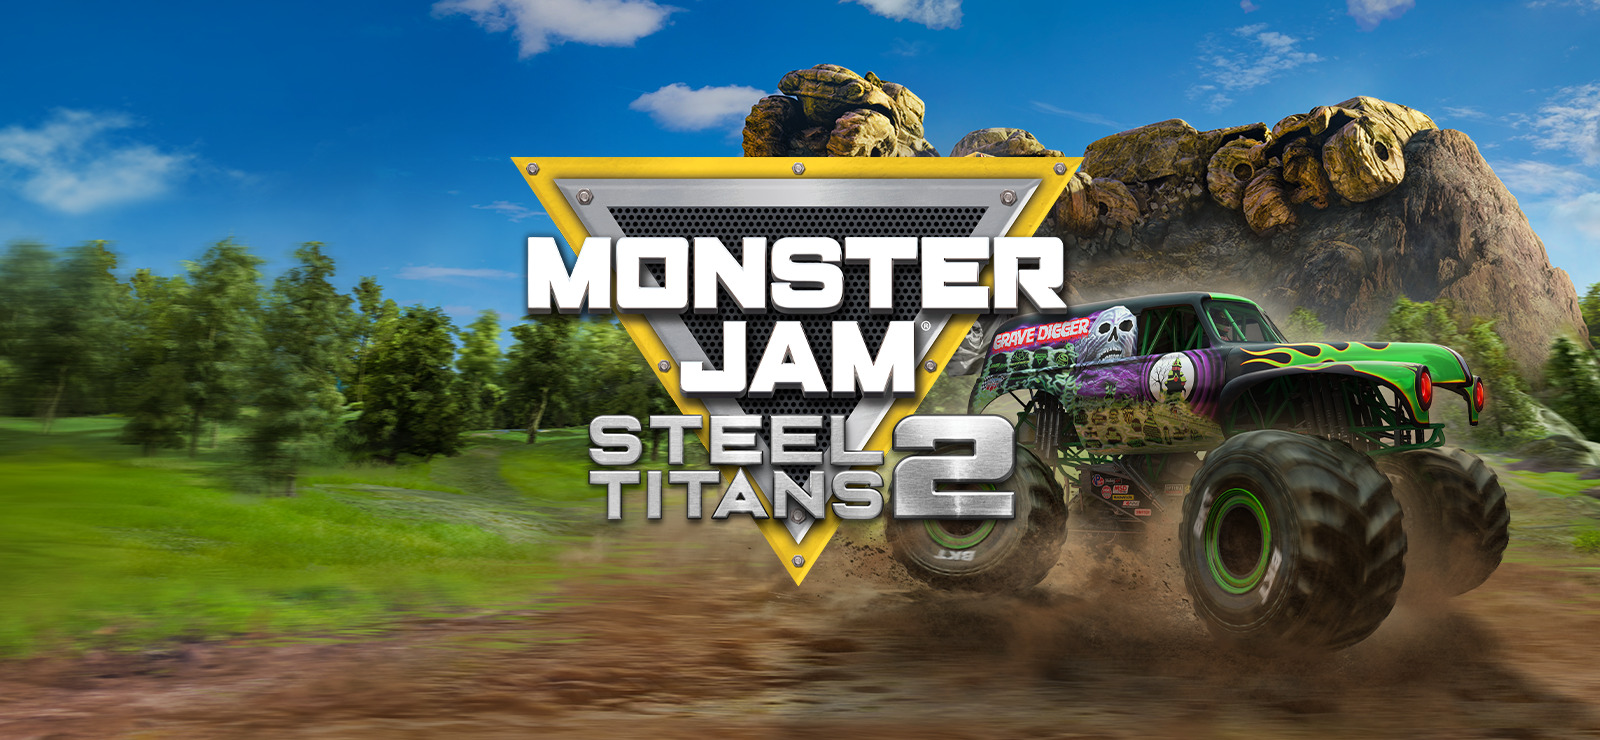 Monster Jam Steel Titans 2 review